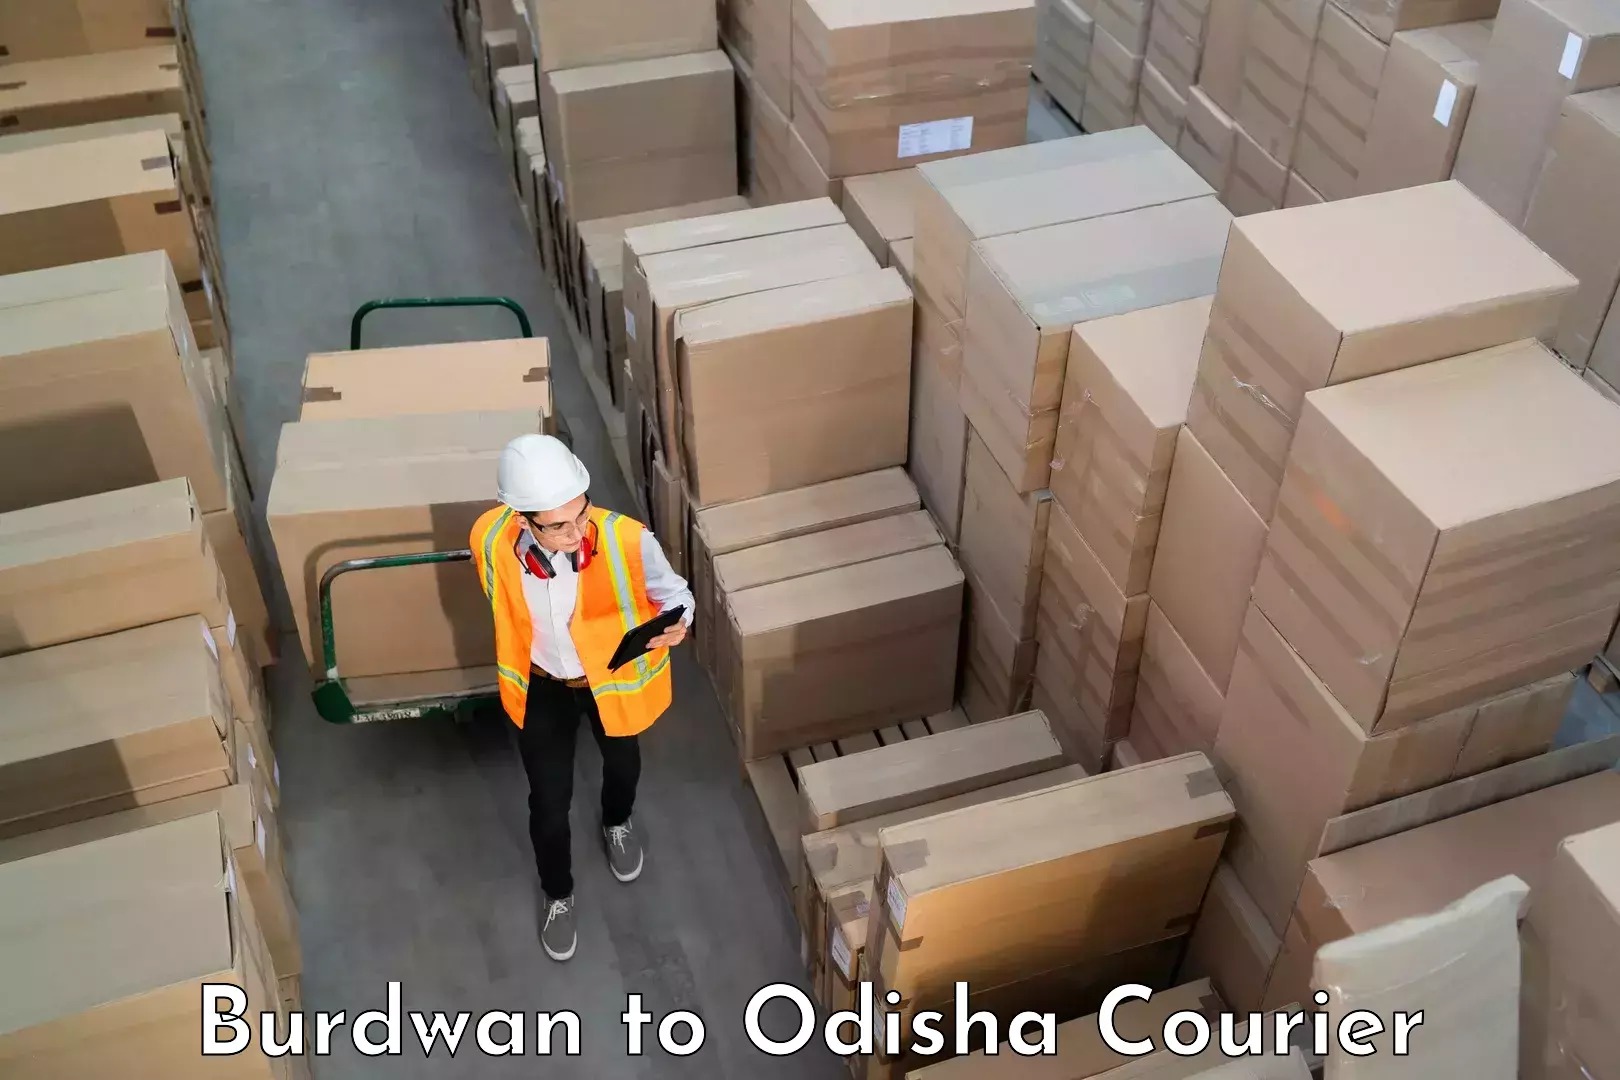 Luggage delivery rates Burdwan to Raruan